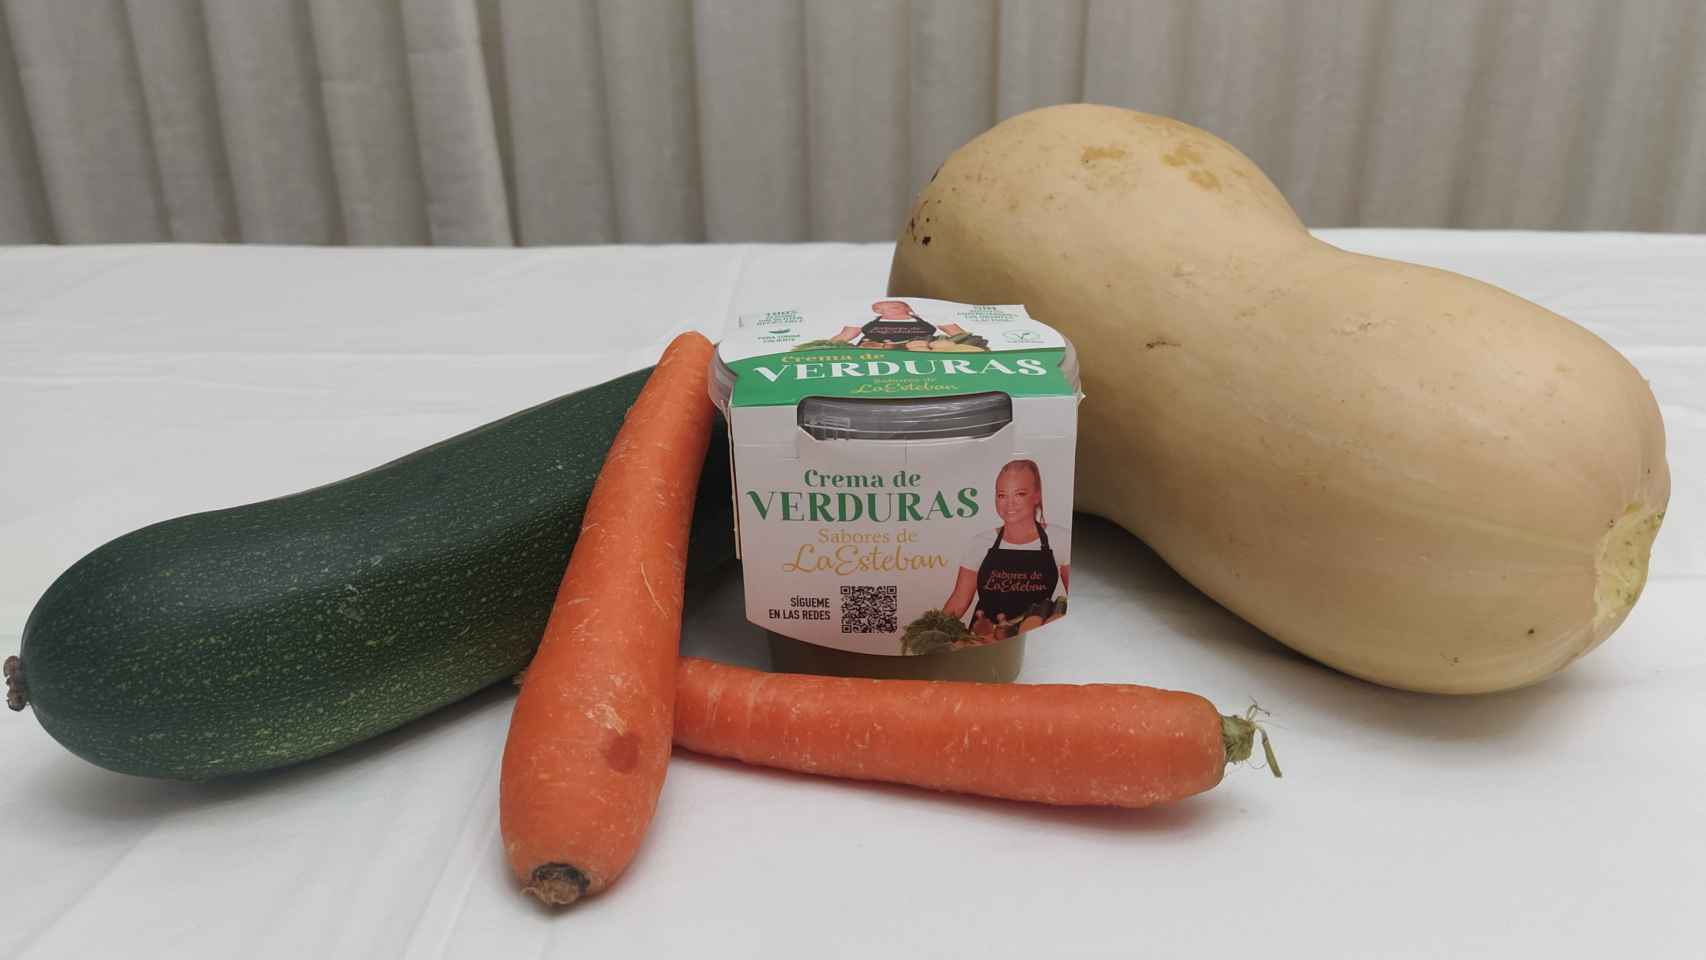 La crema de verduras de 350 gramos de 'Sabores de la Esteban'.